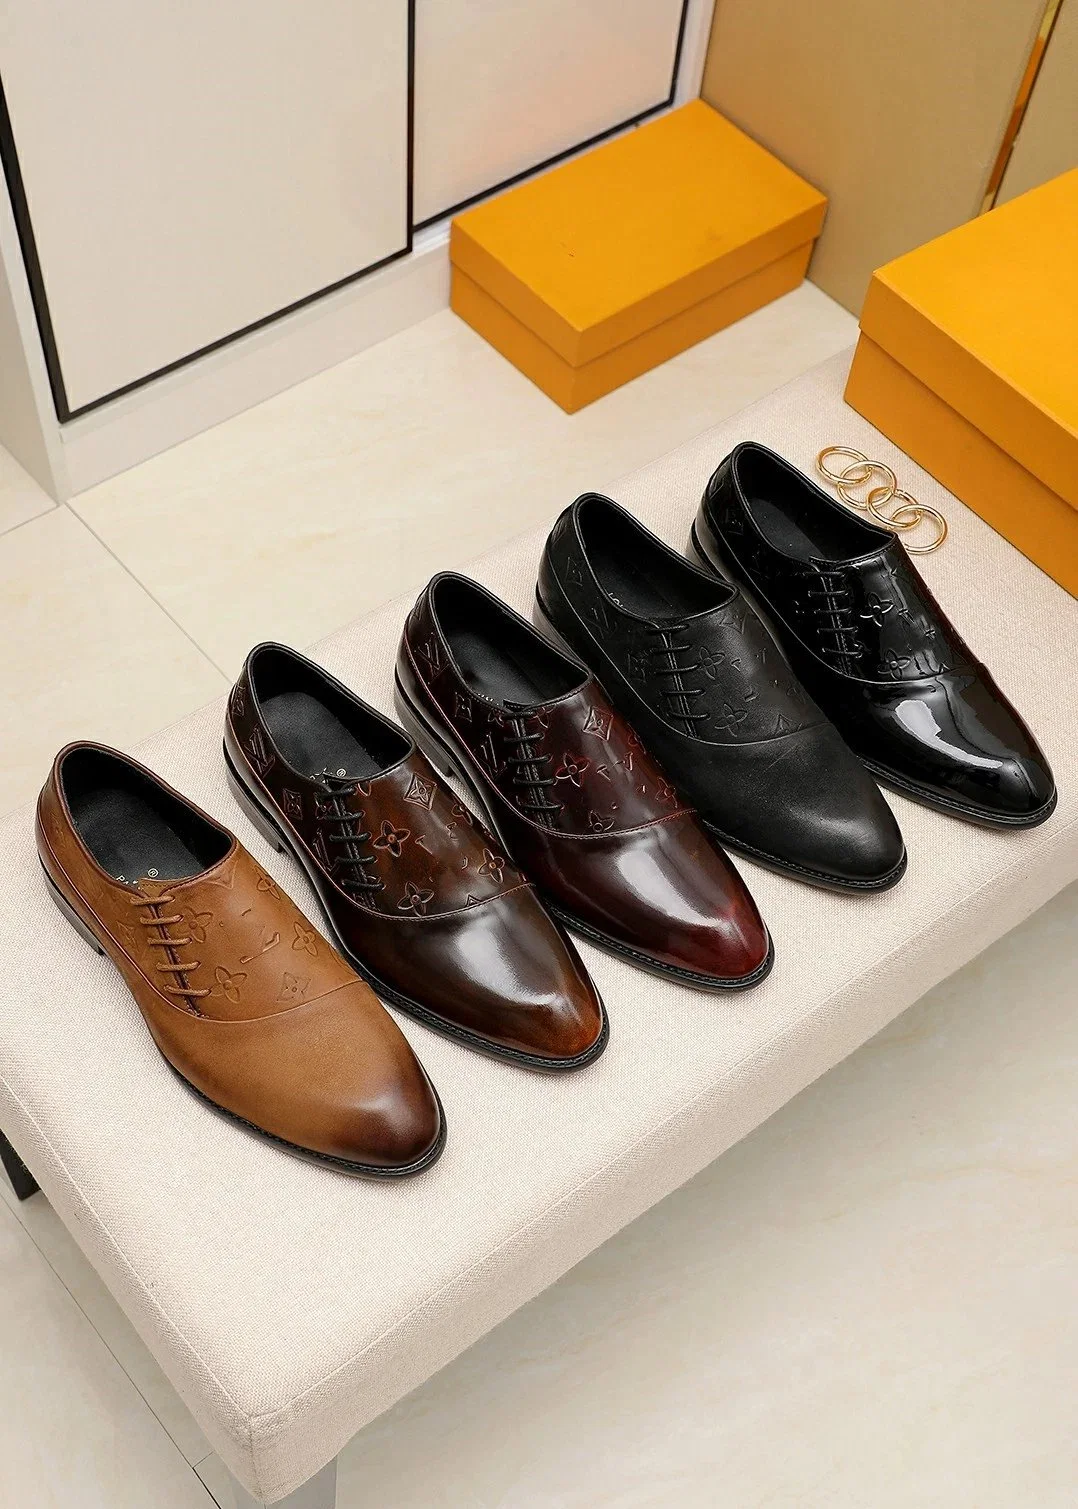 Mayorista de alta gama Balenciag'a de zapatos de diseño de negocio formal de cuero Gucc'i de zapatos Zapatos